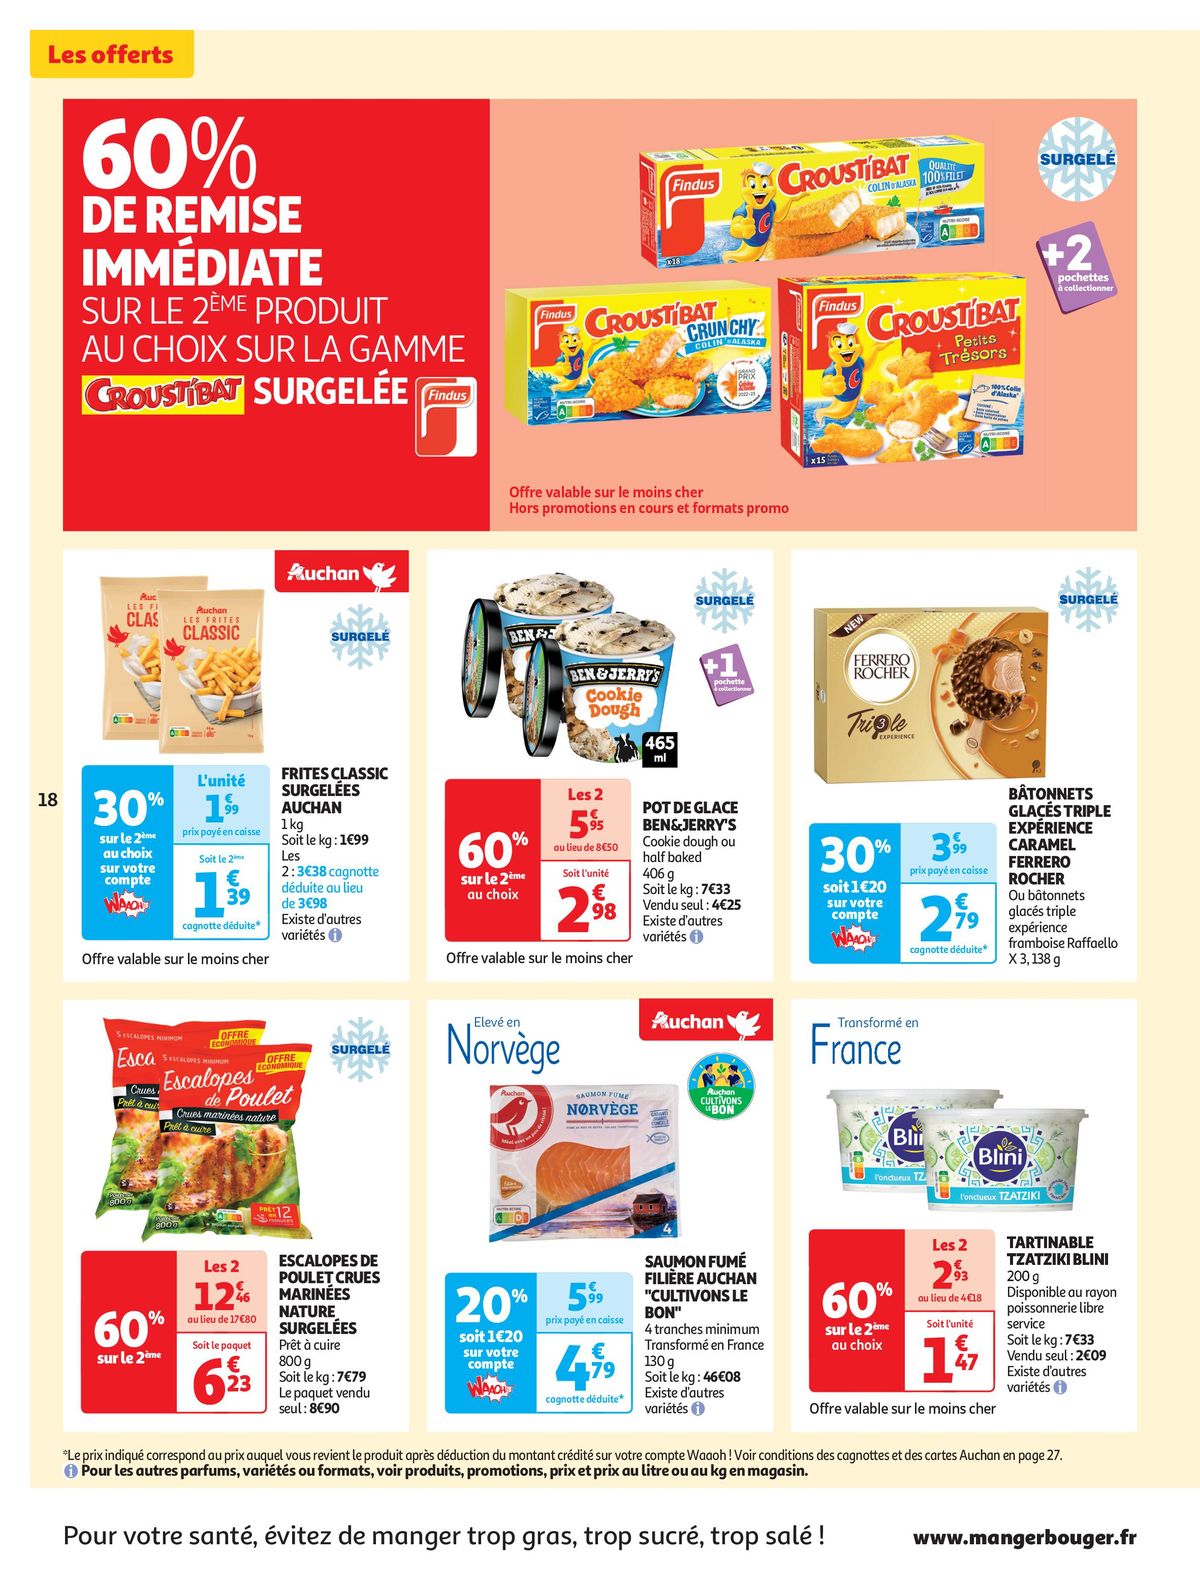 Catalogue Spécial Cuisine Gourmane dans votre supermarché, page 00018